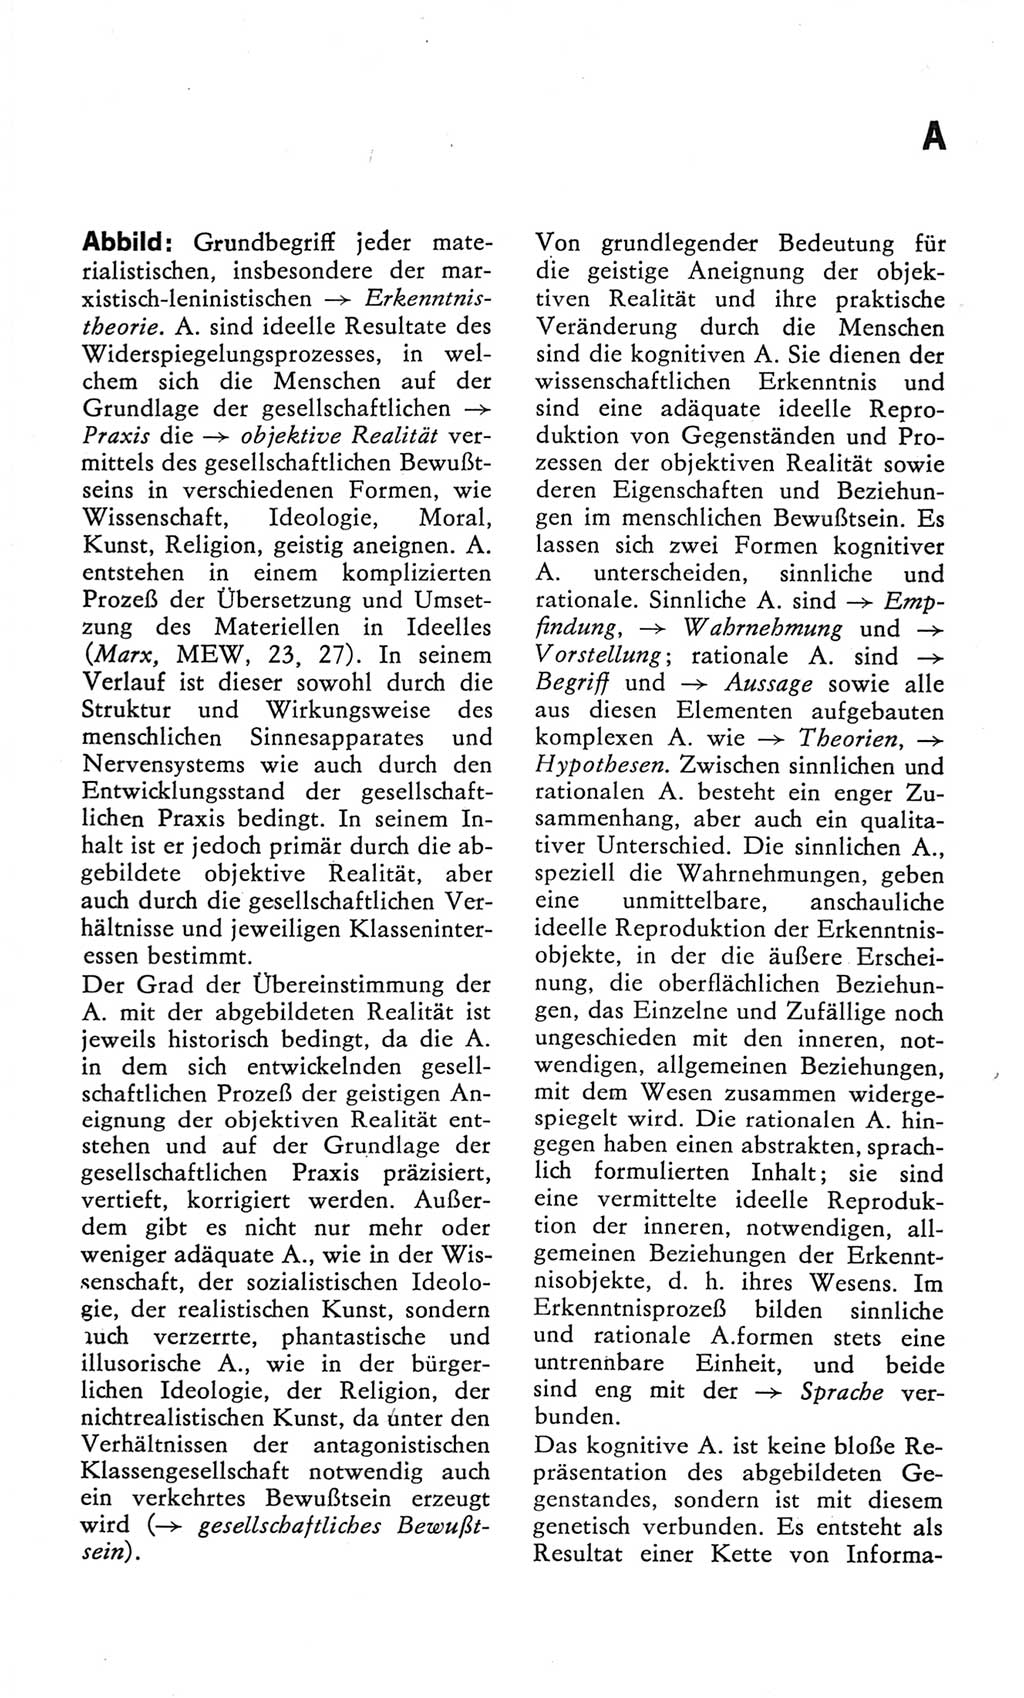 Kleines Wörterbuch der marxistisch-leninistischen Philosophie [Deutsche Demokratische Republik (DDR)] 1982, Seite 9 (Kl. Wb. ML Phil. DDR 1982, S. 9)